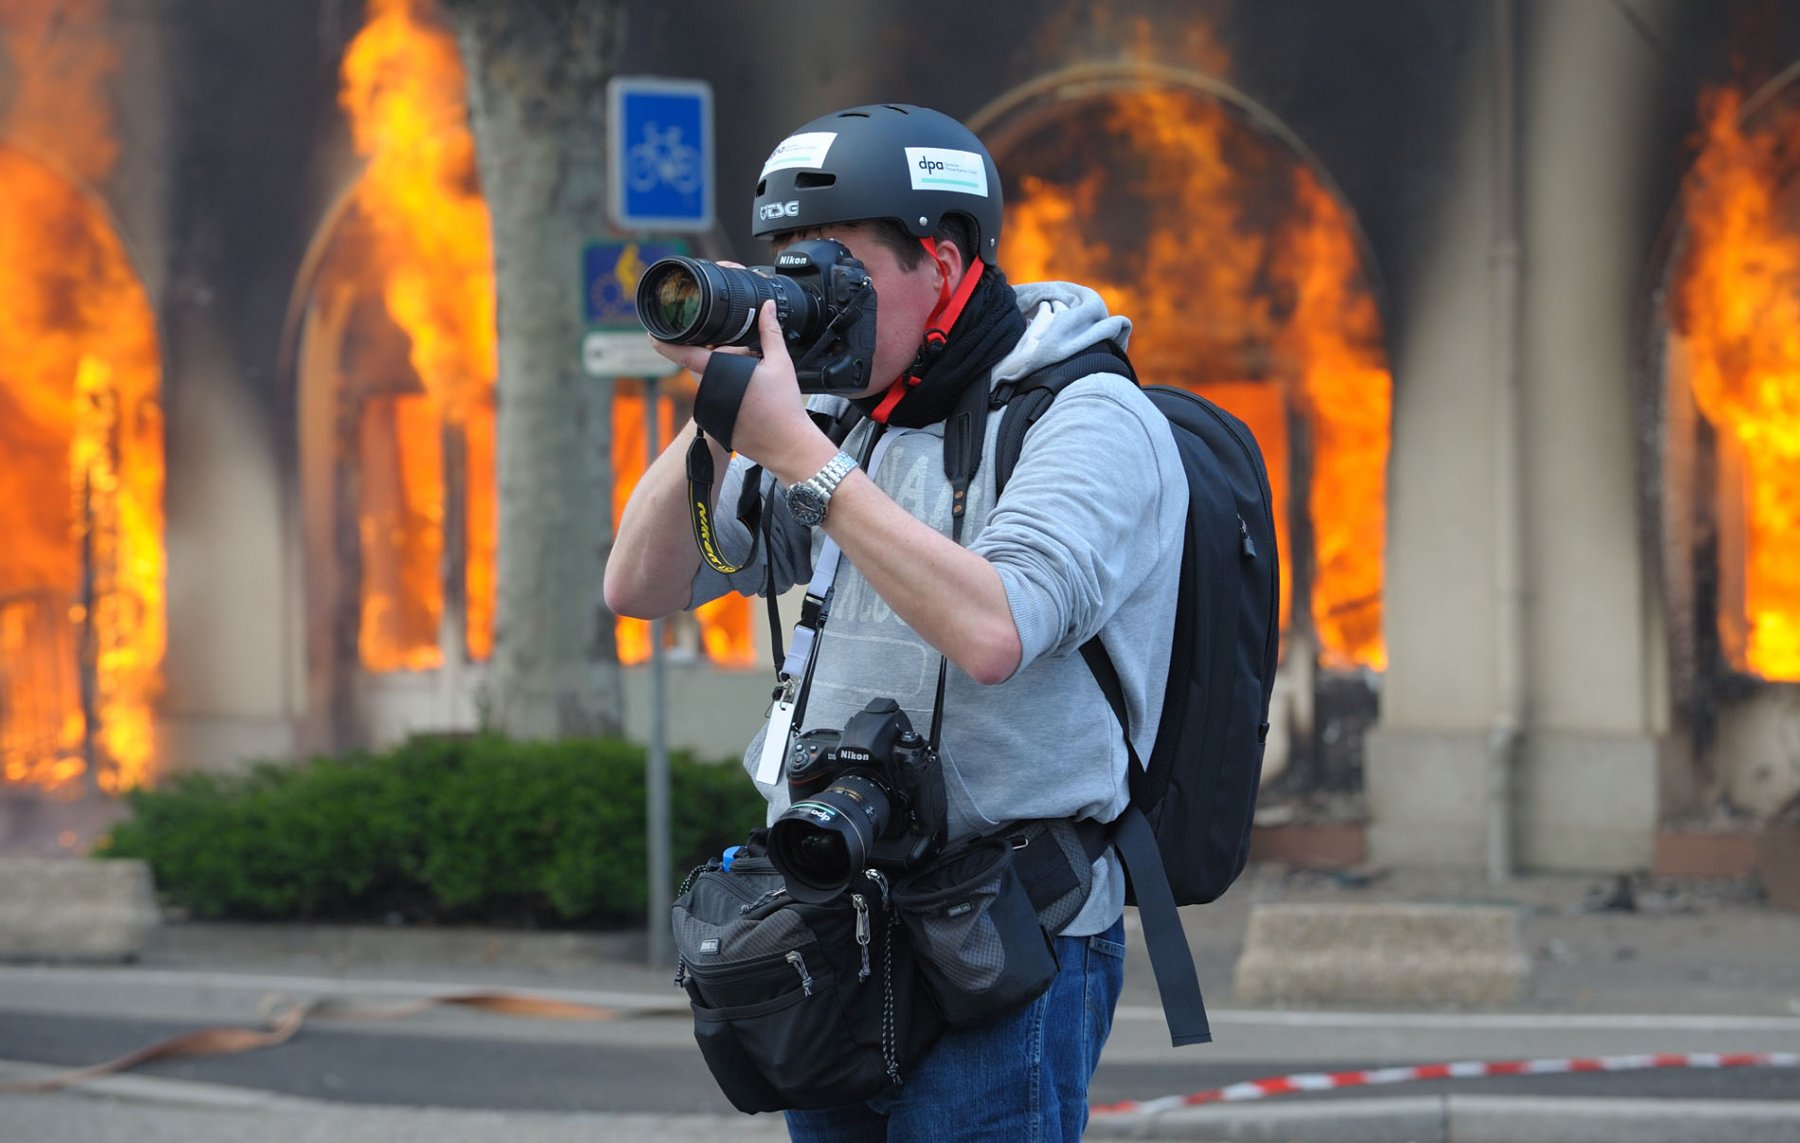 Bei gewalttätigen Ausschreitungen während des NATO-Gipfels in Strasbourg haben Demonstranten ein Hotel in Brand gesetzt. Immer wieder werden Fotografen auch hier von den Demonstranten angegriffen. 